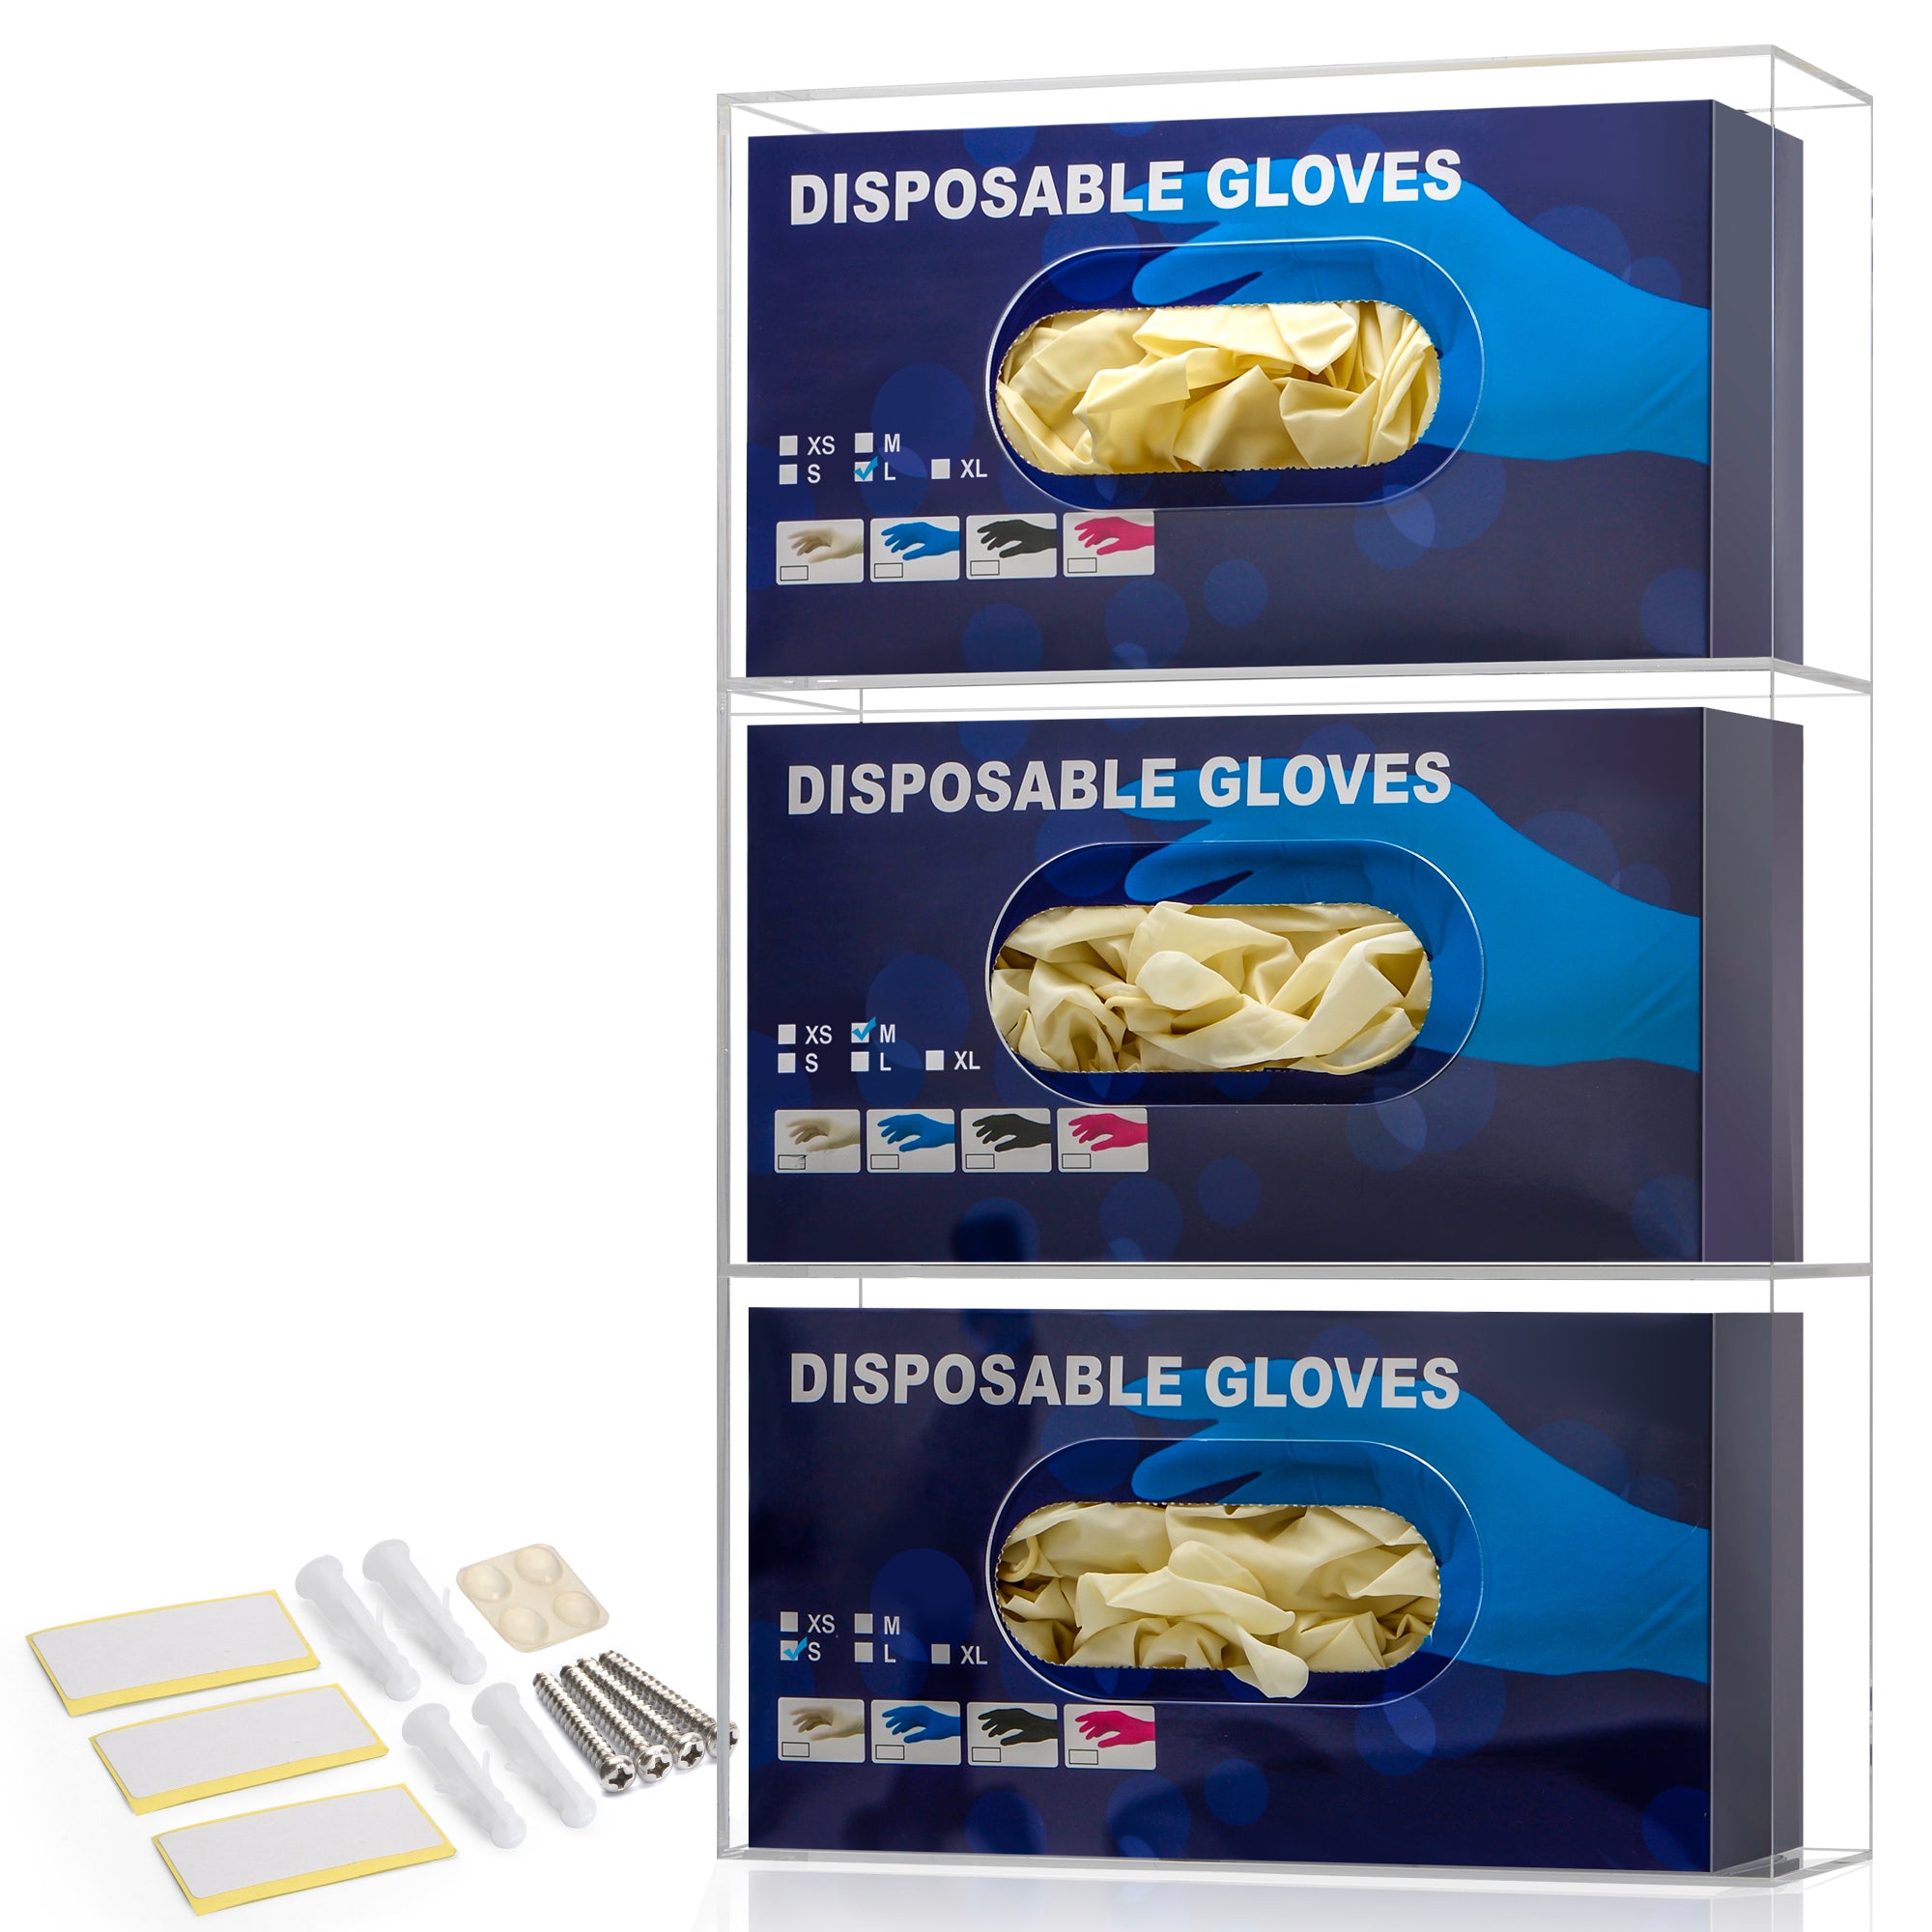 Storage Standard Triple Glove Box Holder Wall Mount Glove Dispenser - Disposable Glove Holder Wall Mount Glove Station for Medical Gloves, Multipurpose Kitchen Gloves Holder - 16.5 x 10 x 3.5 Inches